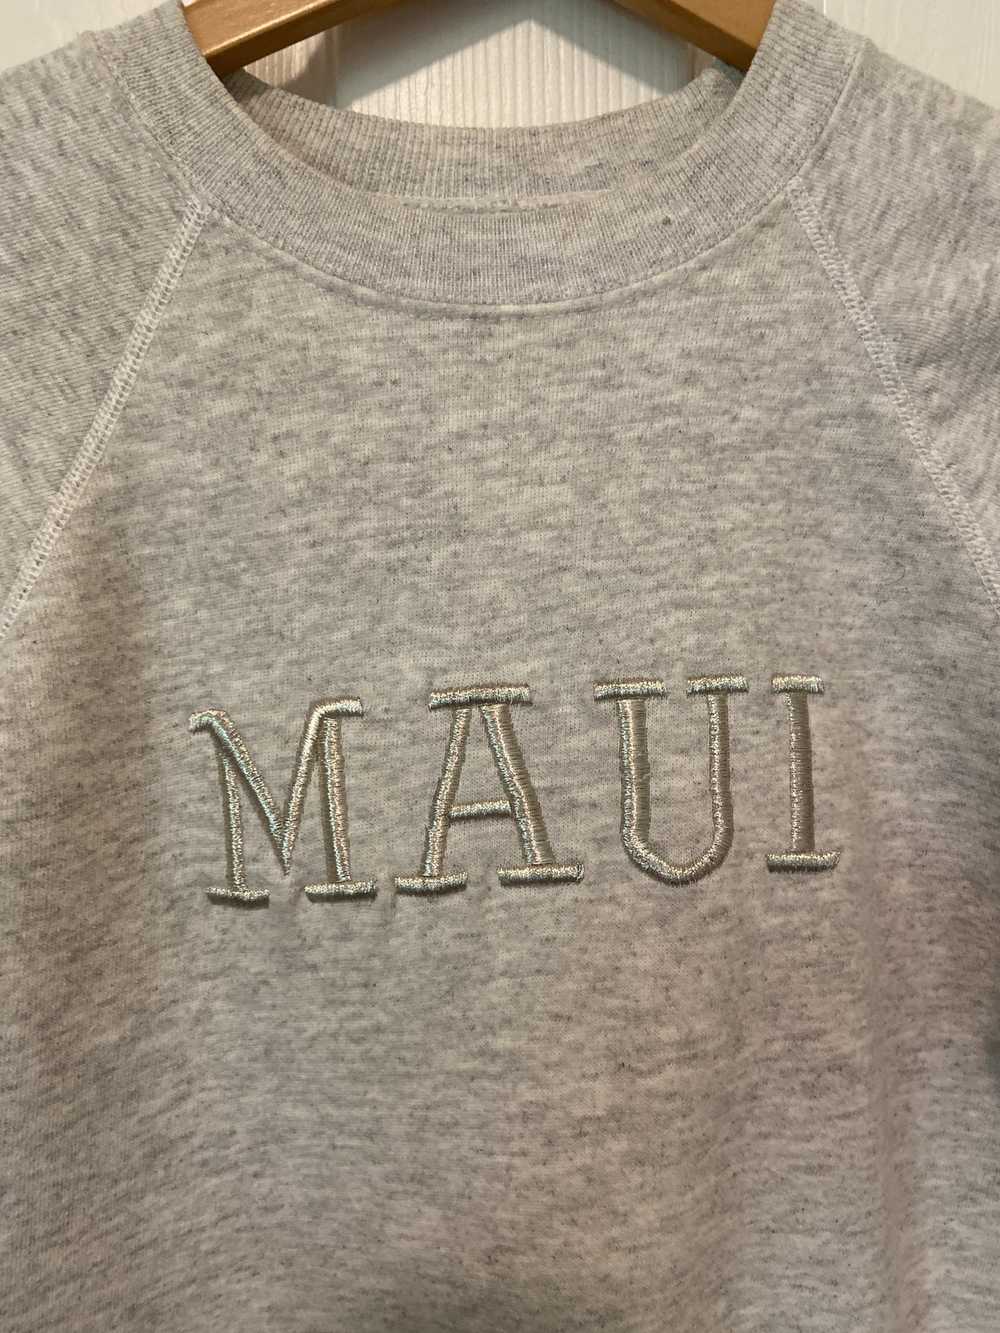 Hanes Vintage 80s Hanes Maui embroidered sweatshi… - image 2